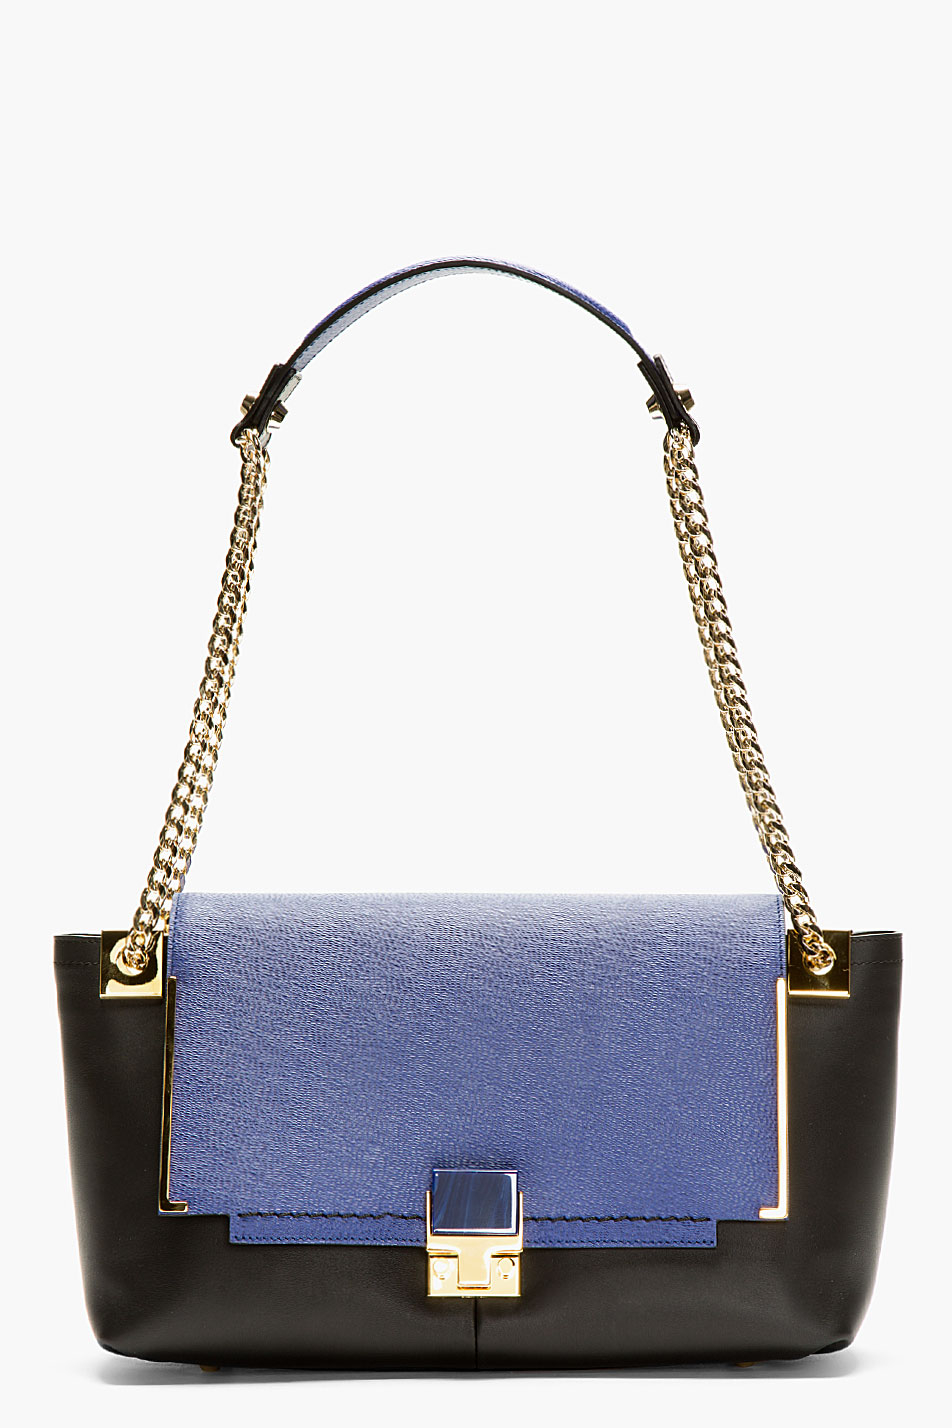 Lyst - Lanvin Blue and Black Leather Shoulder Bag in Blue